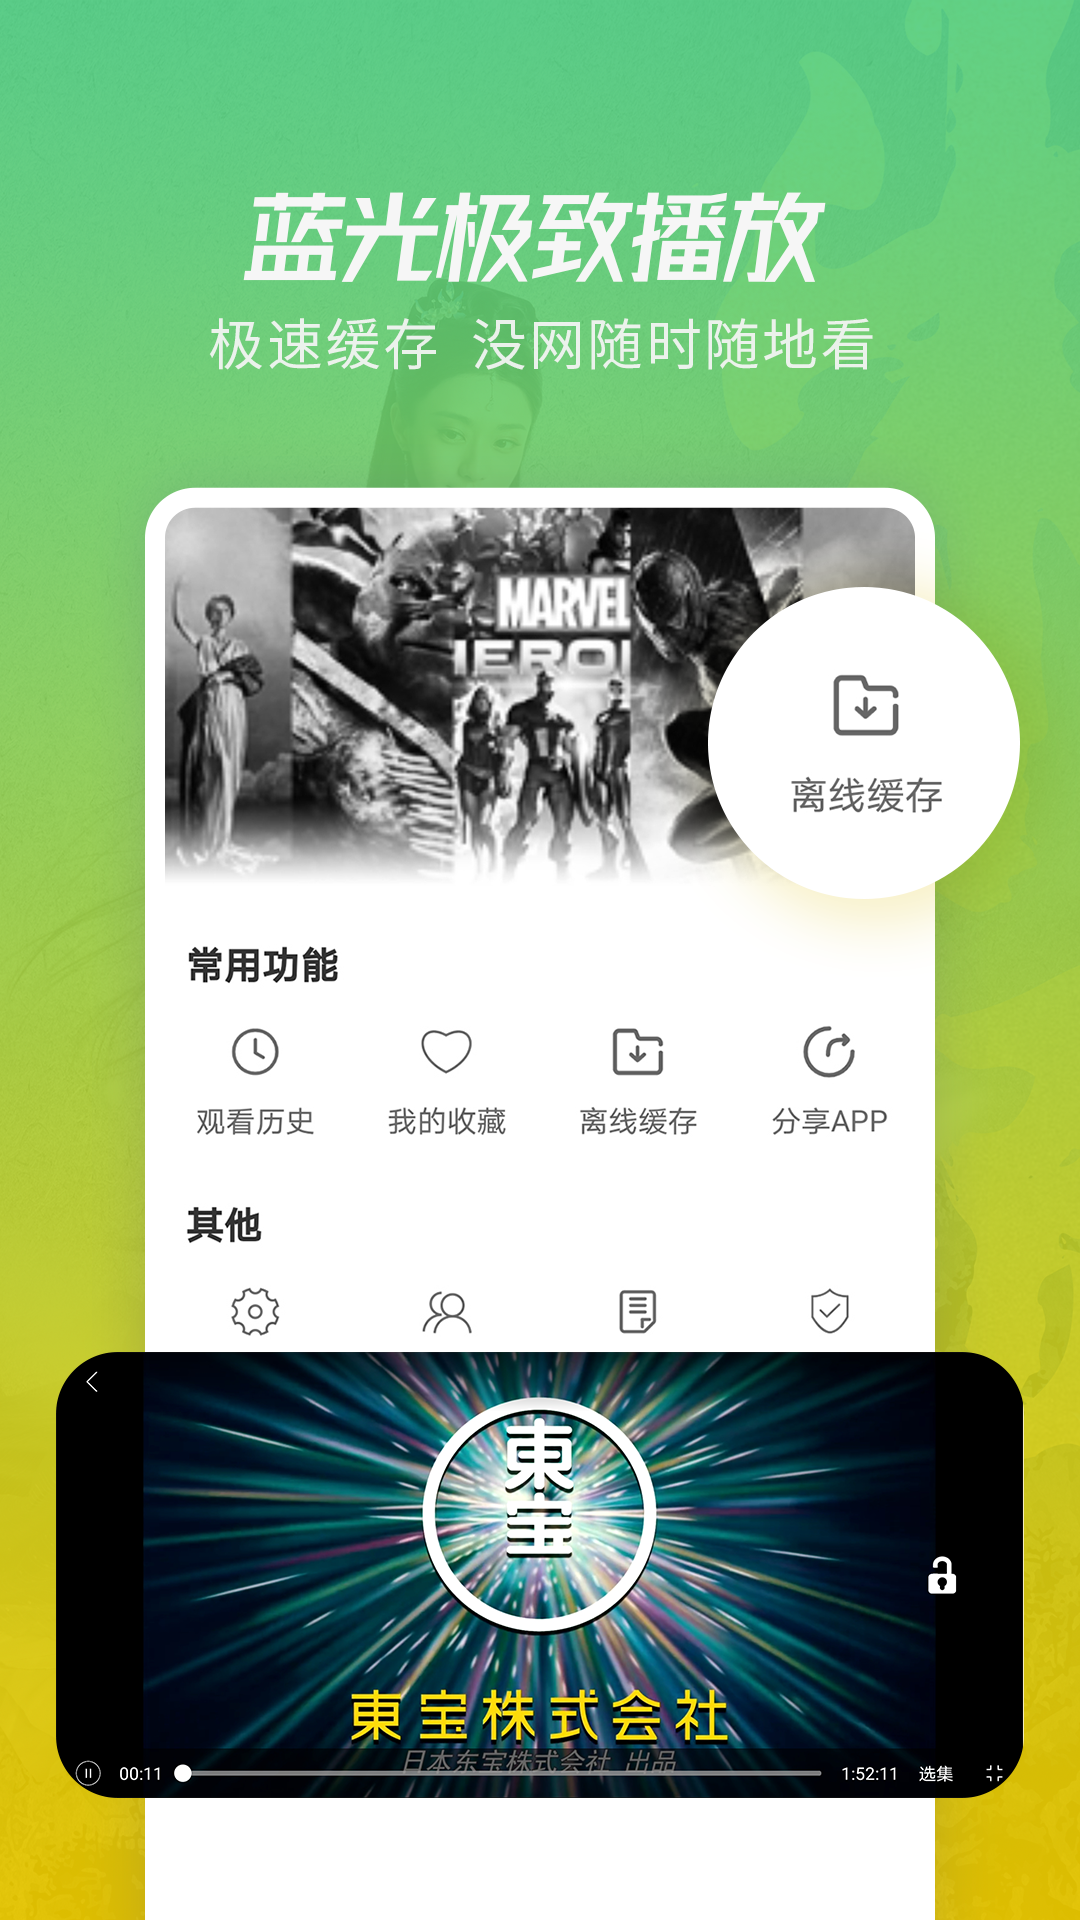 竹叶视频App下载最新版 5.2.0截图